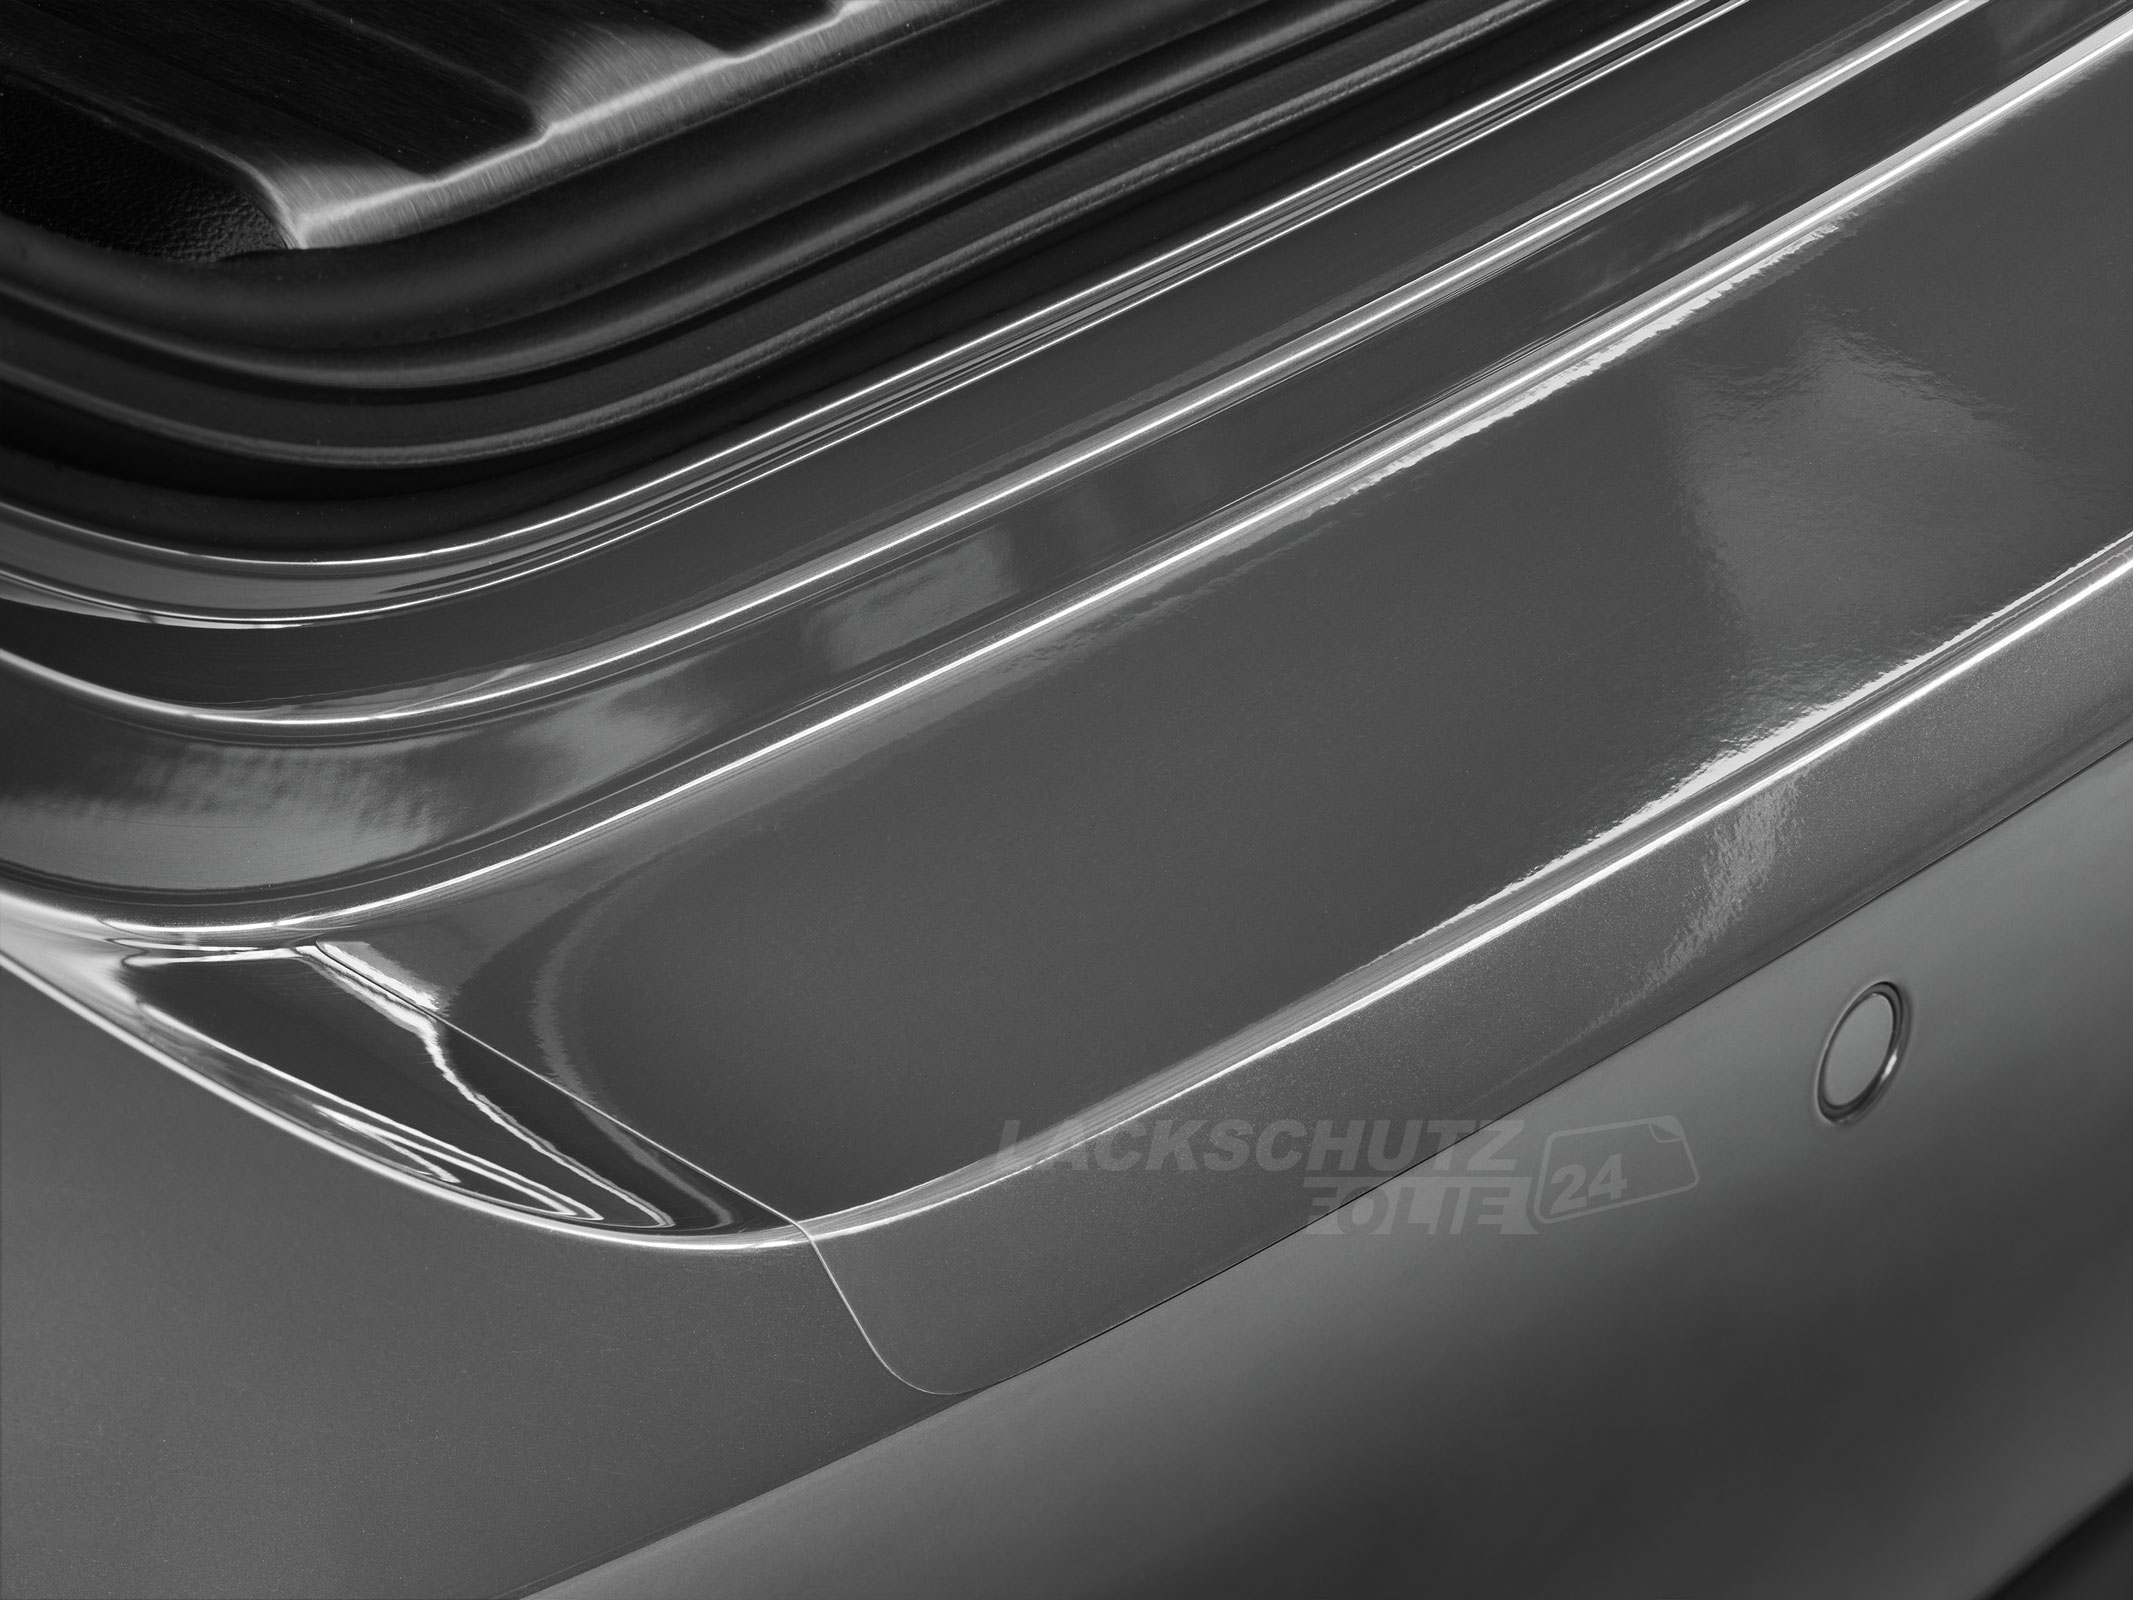 Ladekantenschutzfolie - Transparent Glatt Hochglänzend 150 µm stark für Ford Fusion ab BJ 2003